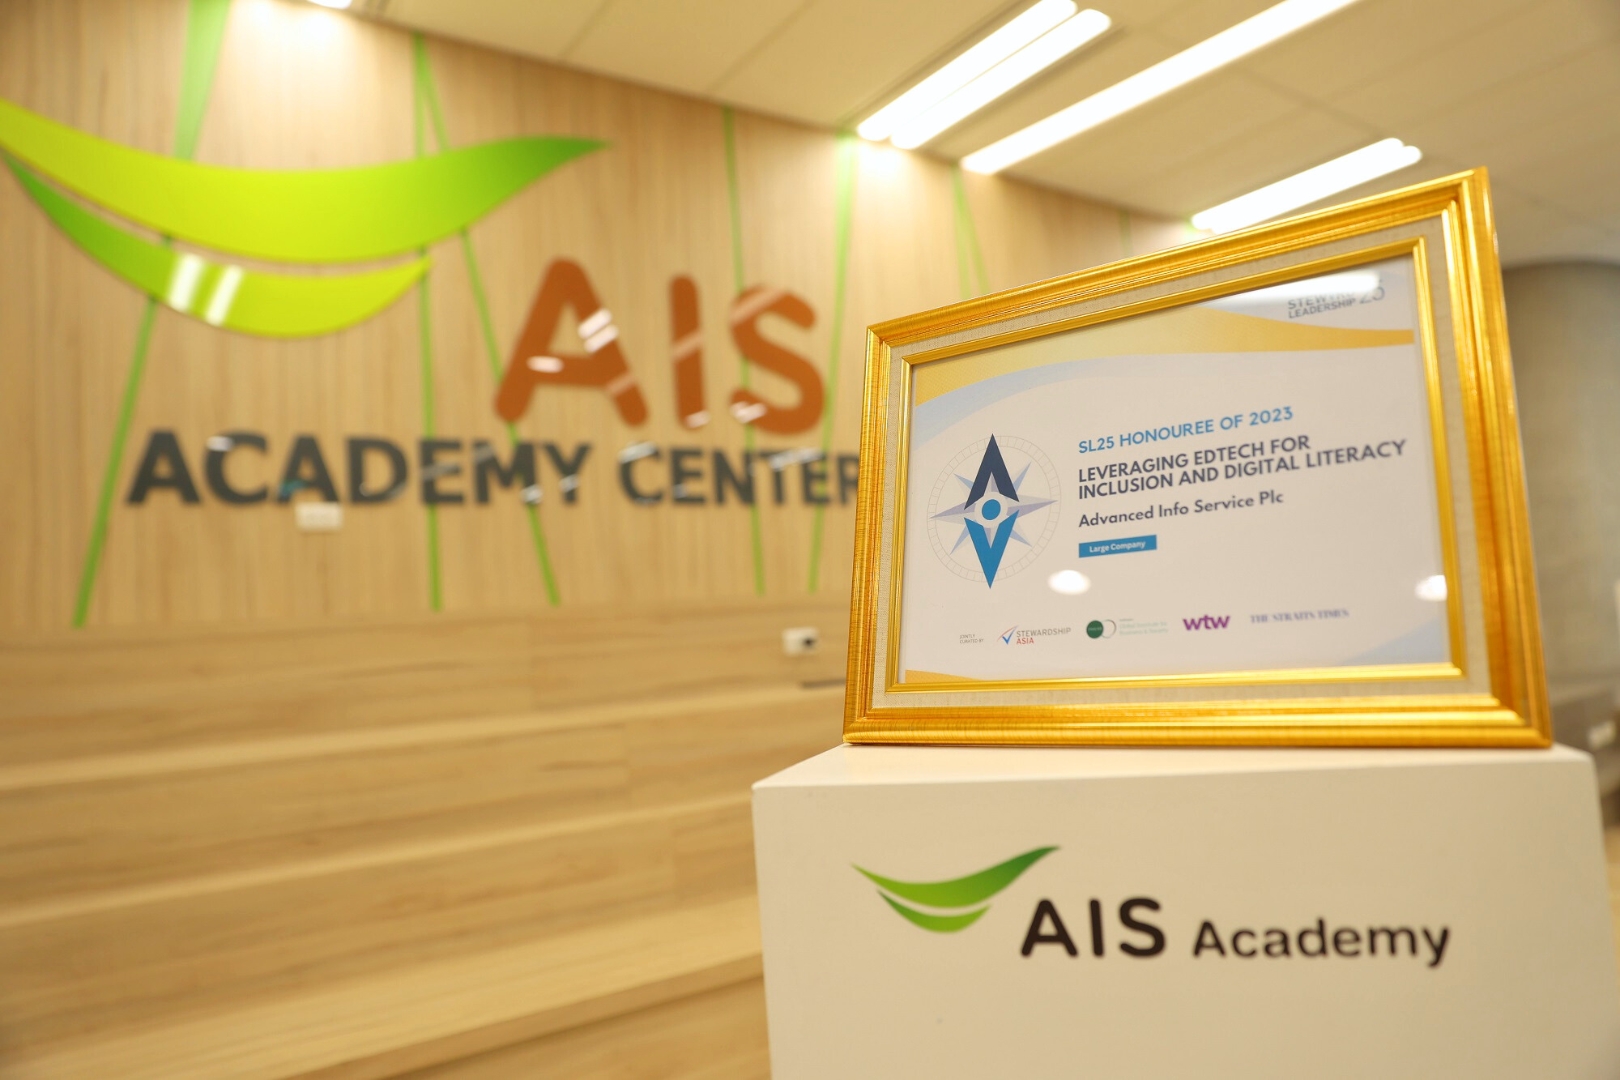 AIS Academy